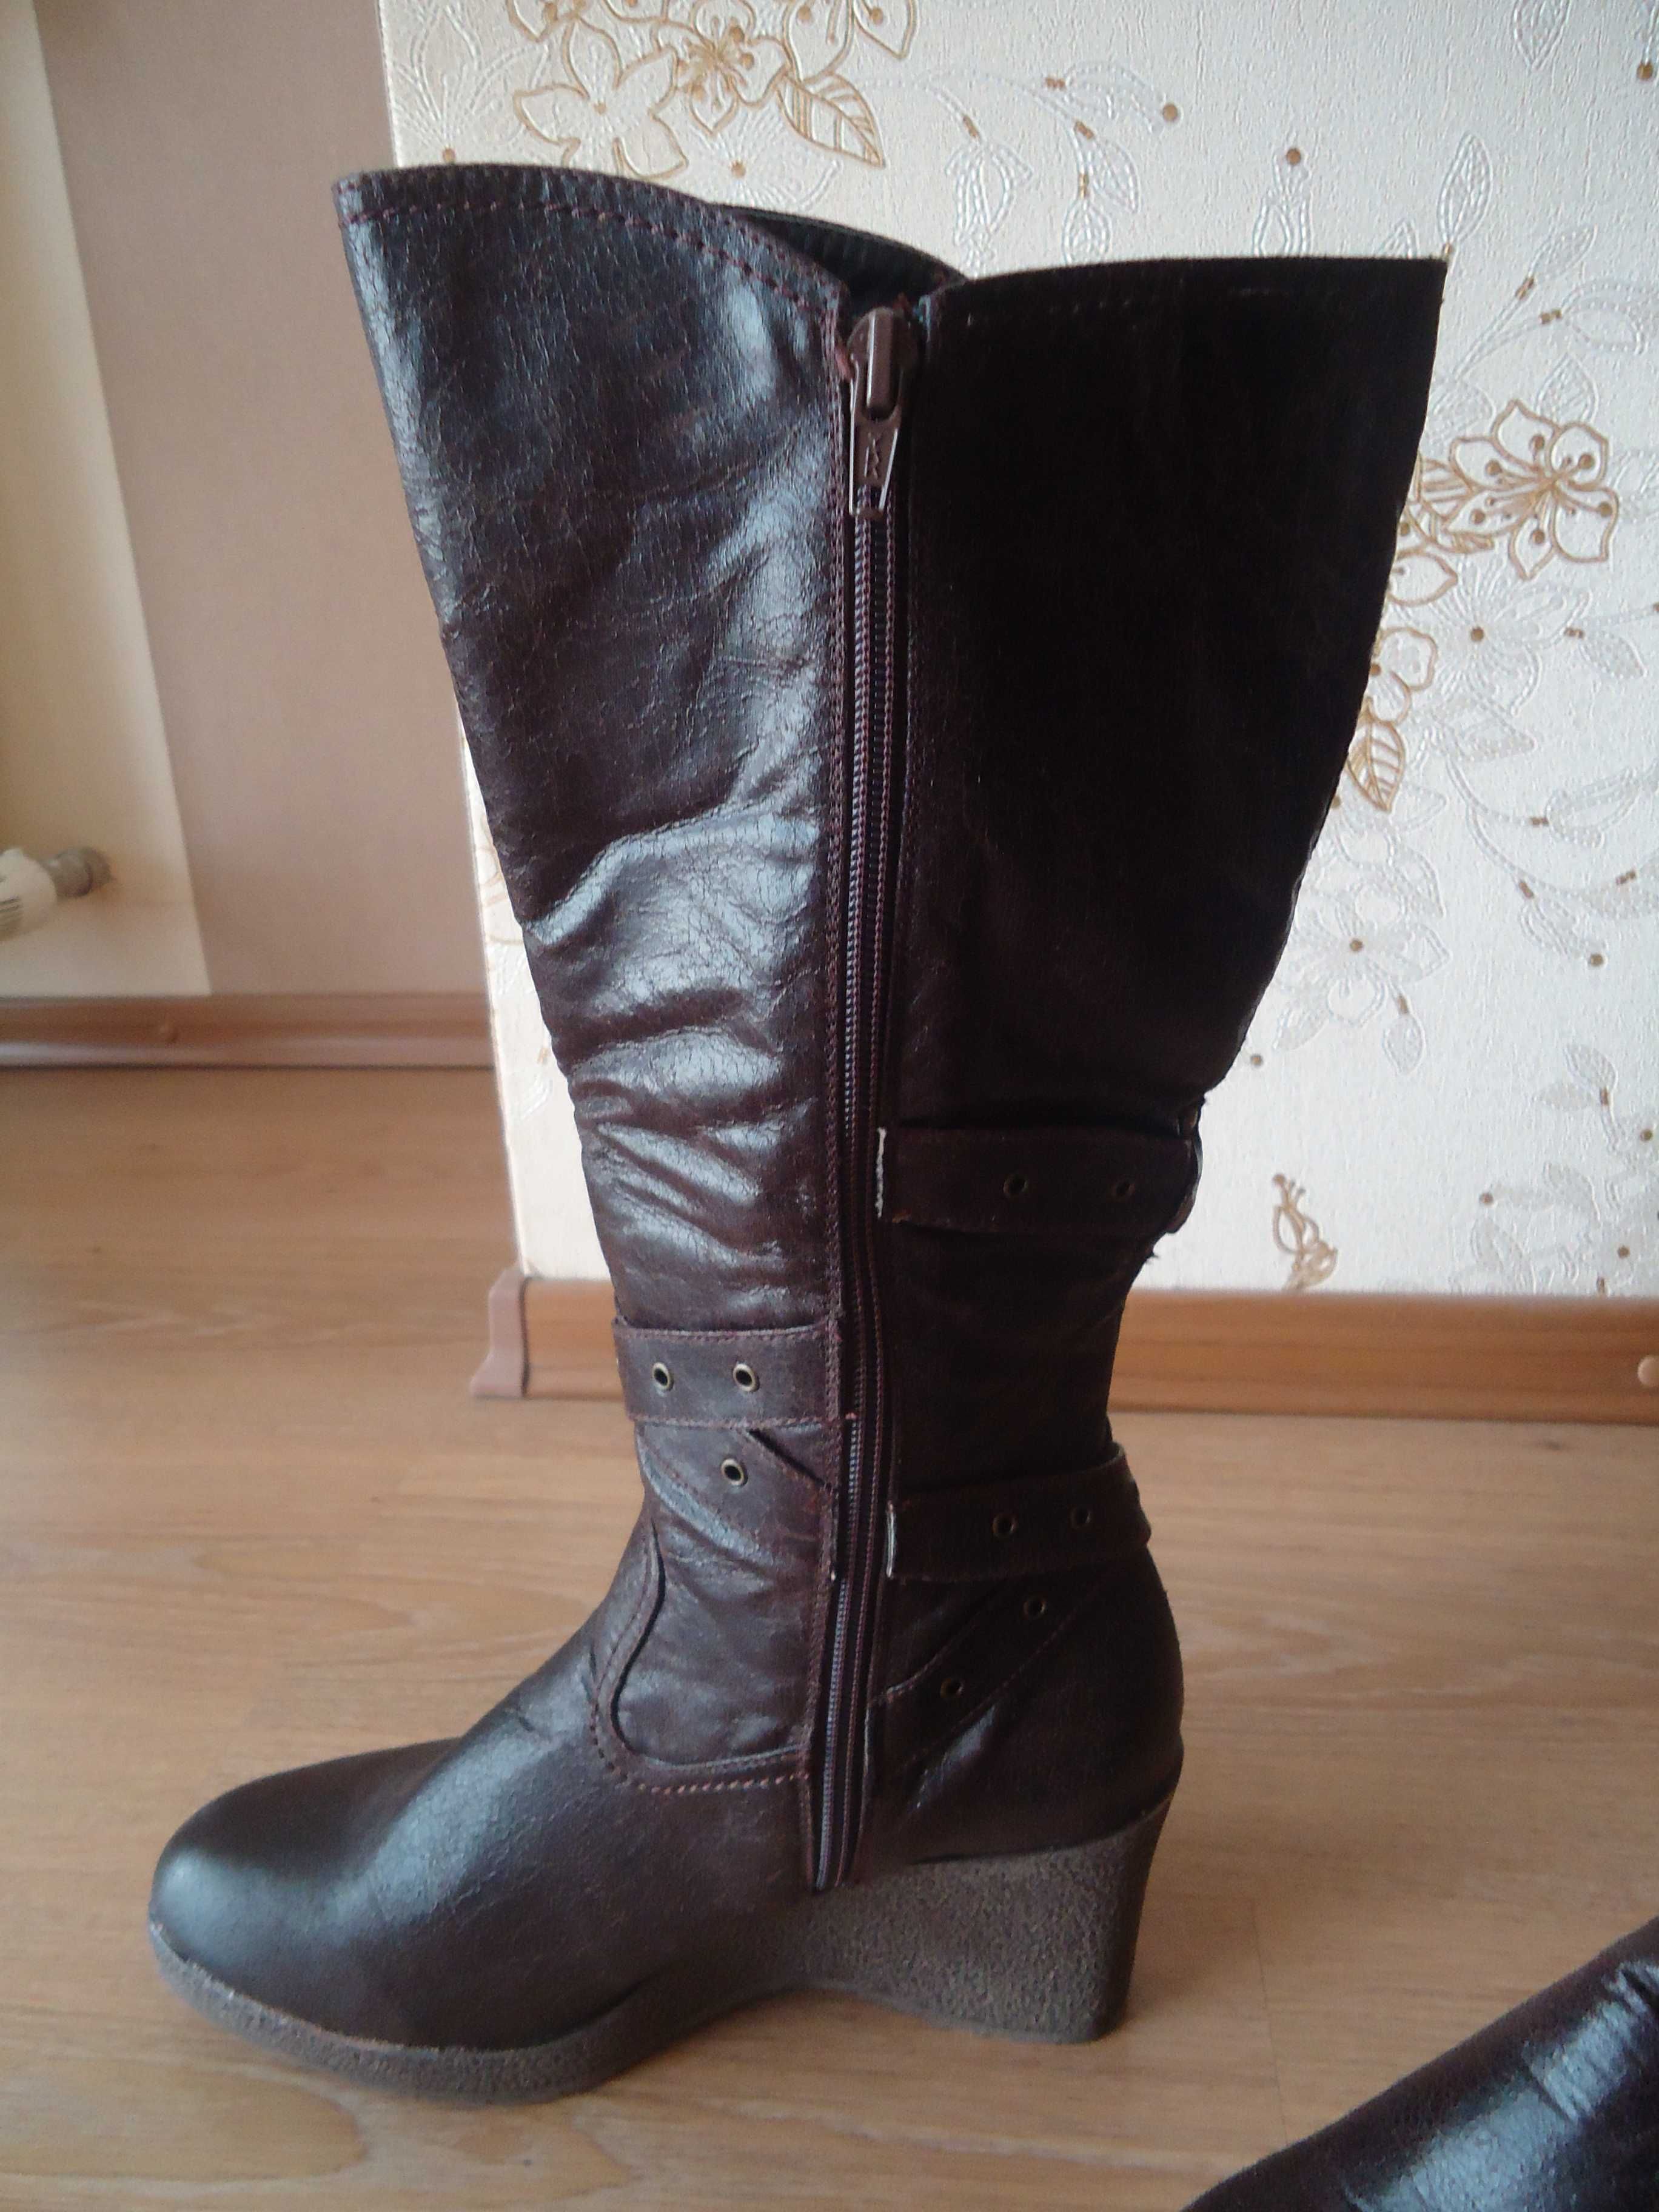 Женские новые кожаные фирменные демисезонные сапоги, стелька 24,5 см.